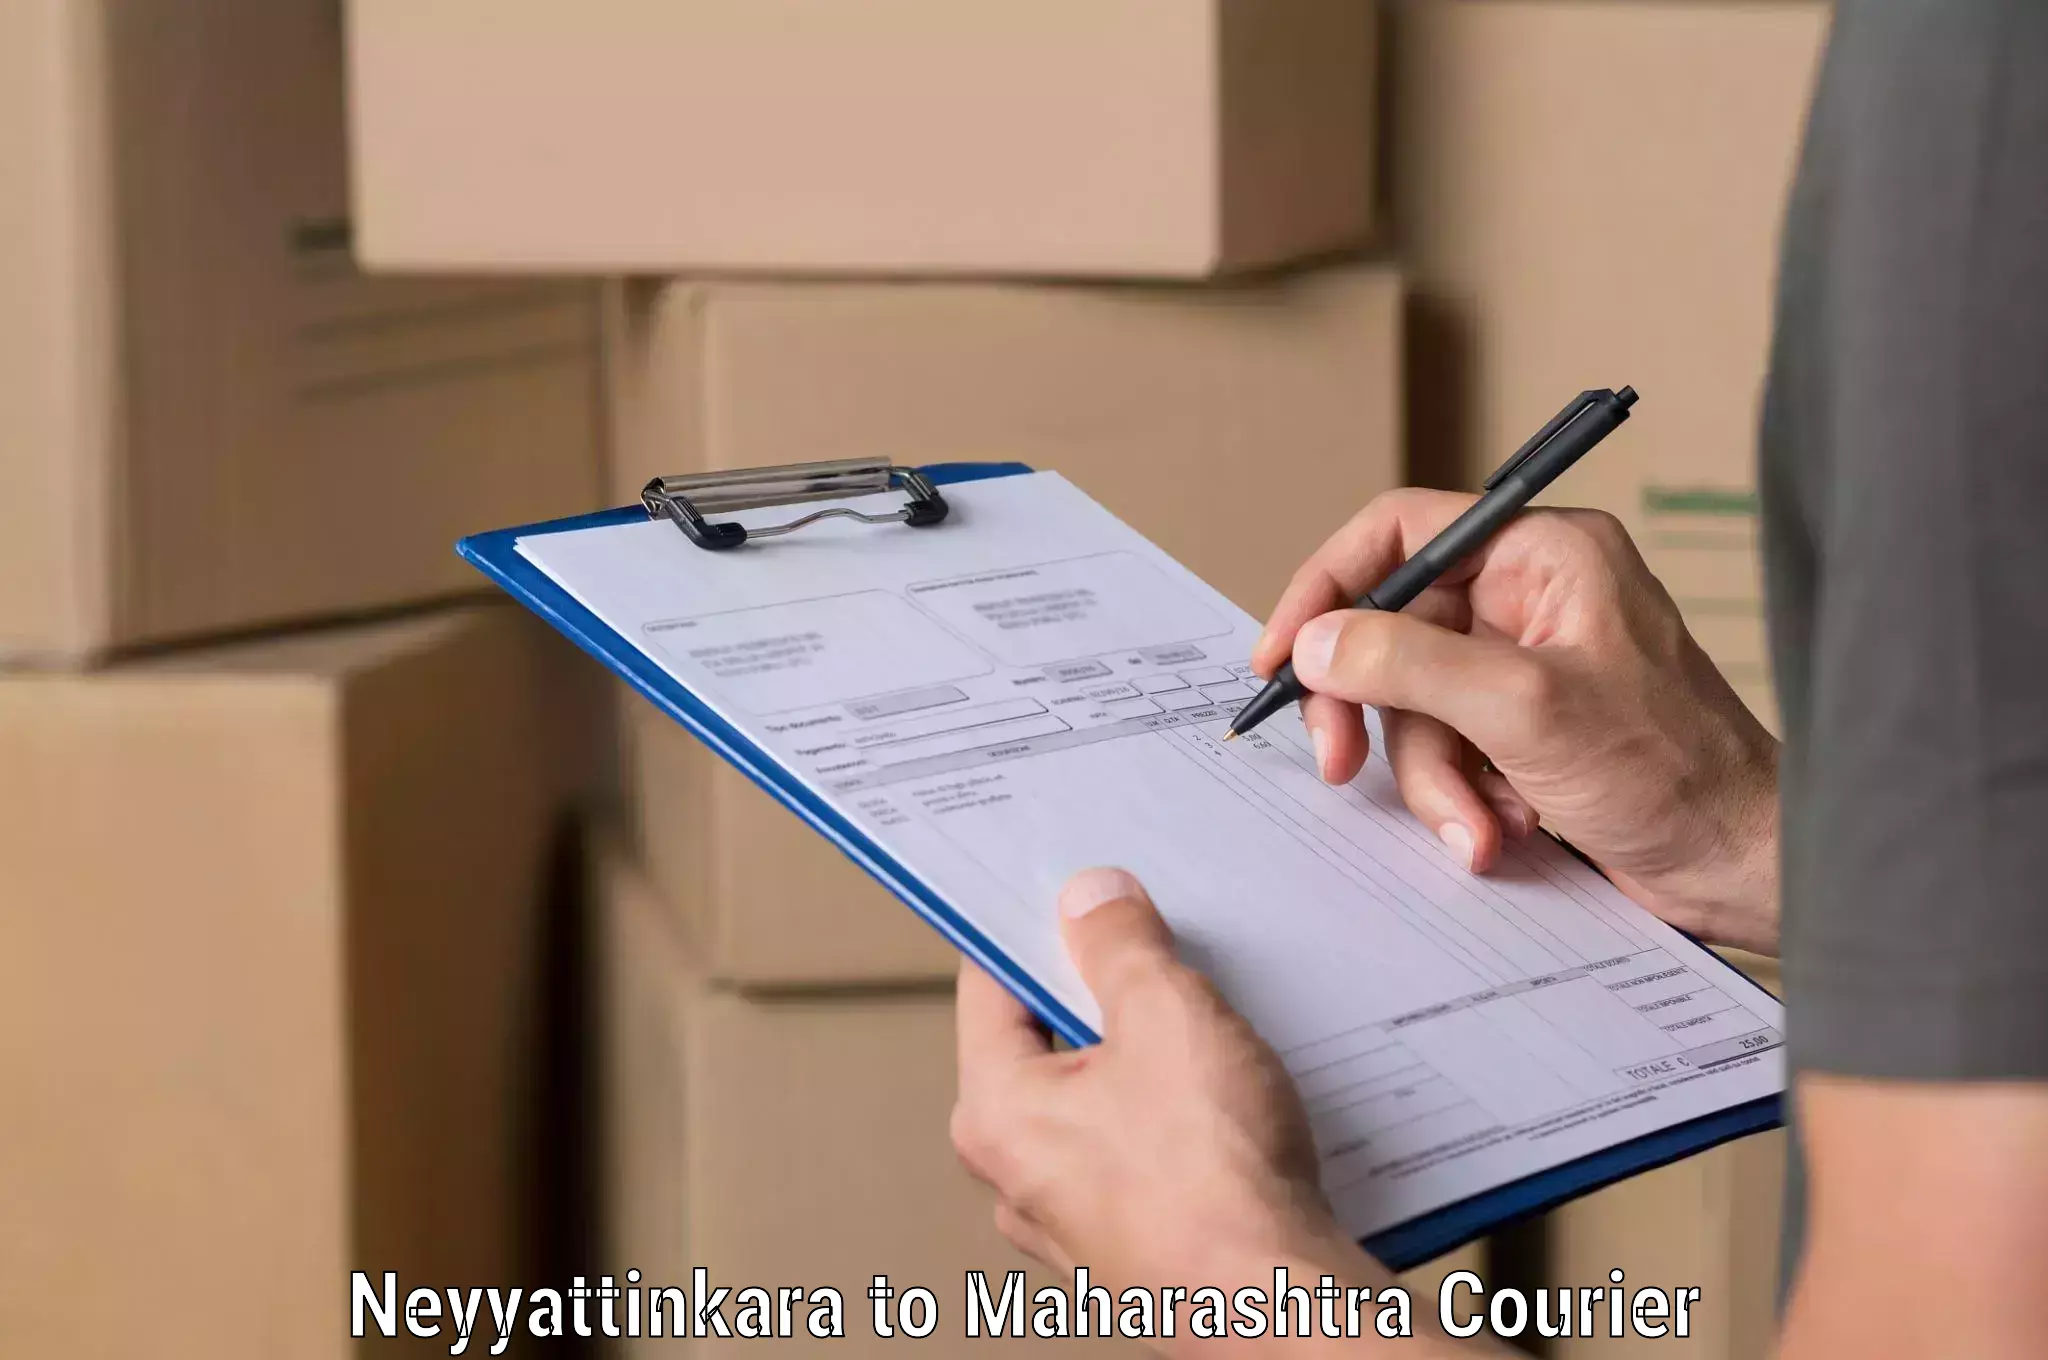 Doorstep delivery service Neyyattinkara to Wai